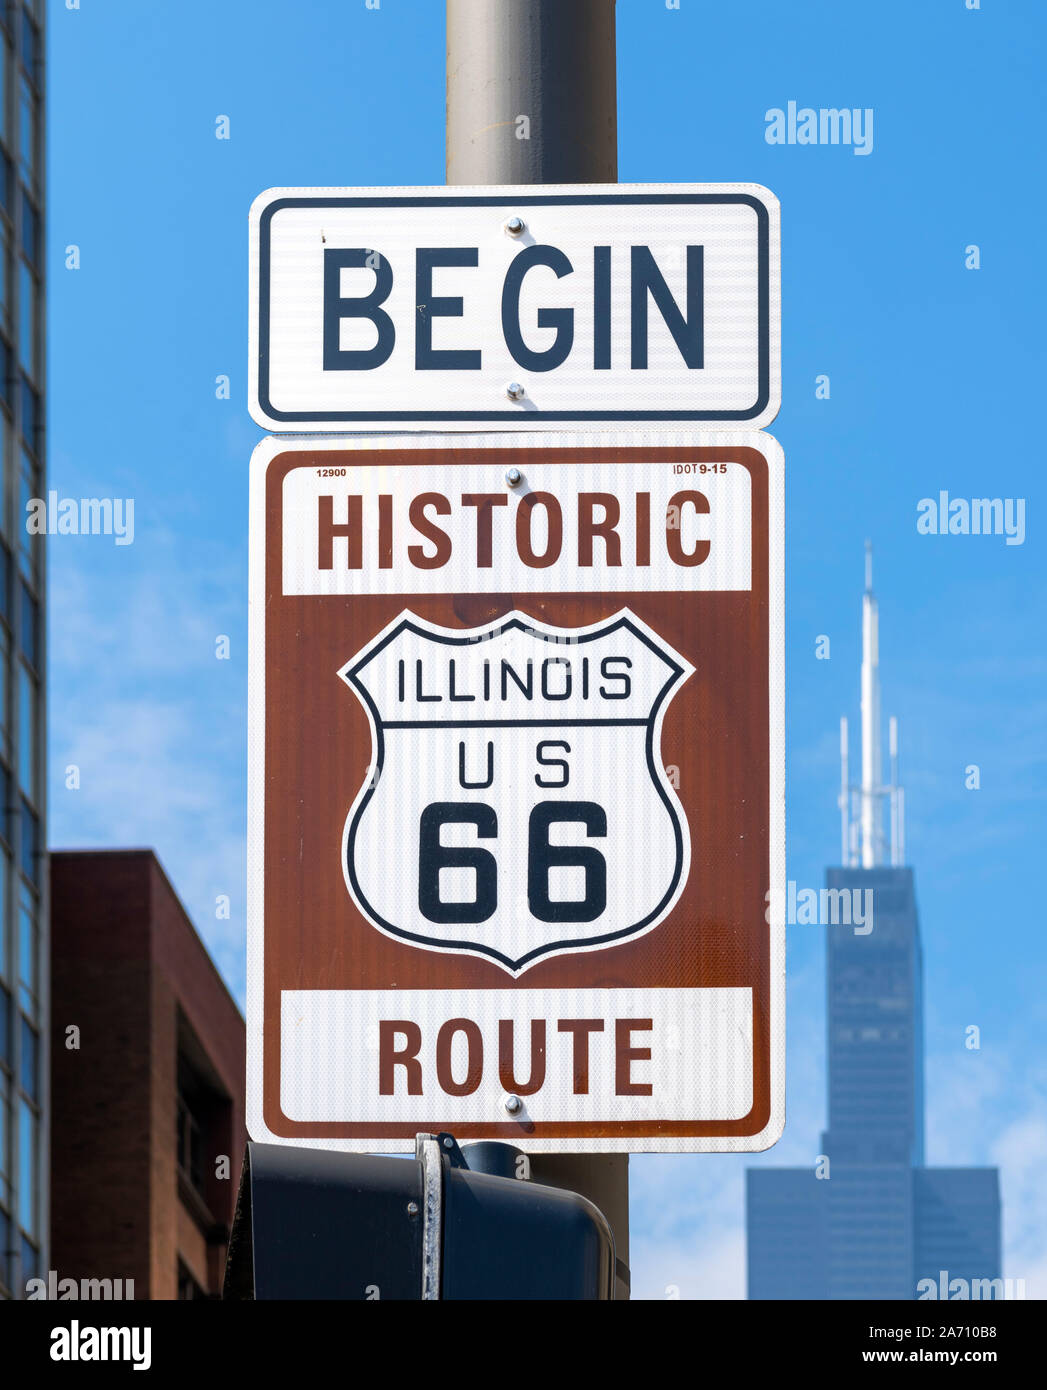 66 Zeichen weg. Beginnen historischen Route 66 Zeichen für den Beginn der Route 66 auf E Adams Street in der Innenstadt von Chicago, Illinois, USA Stockfoto